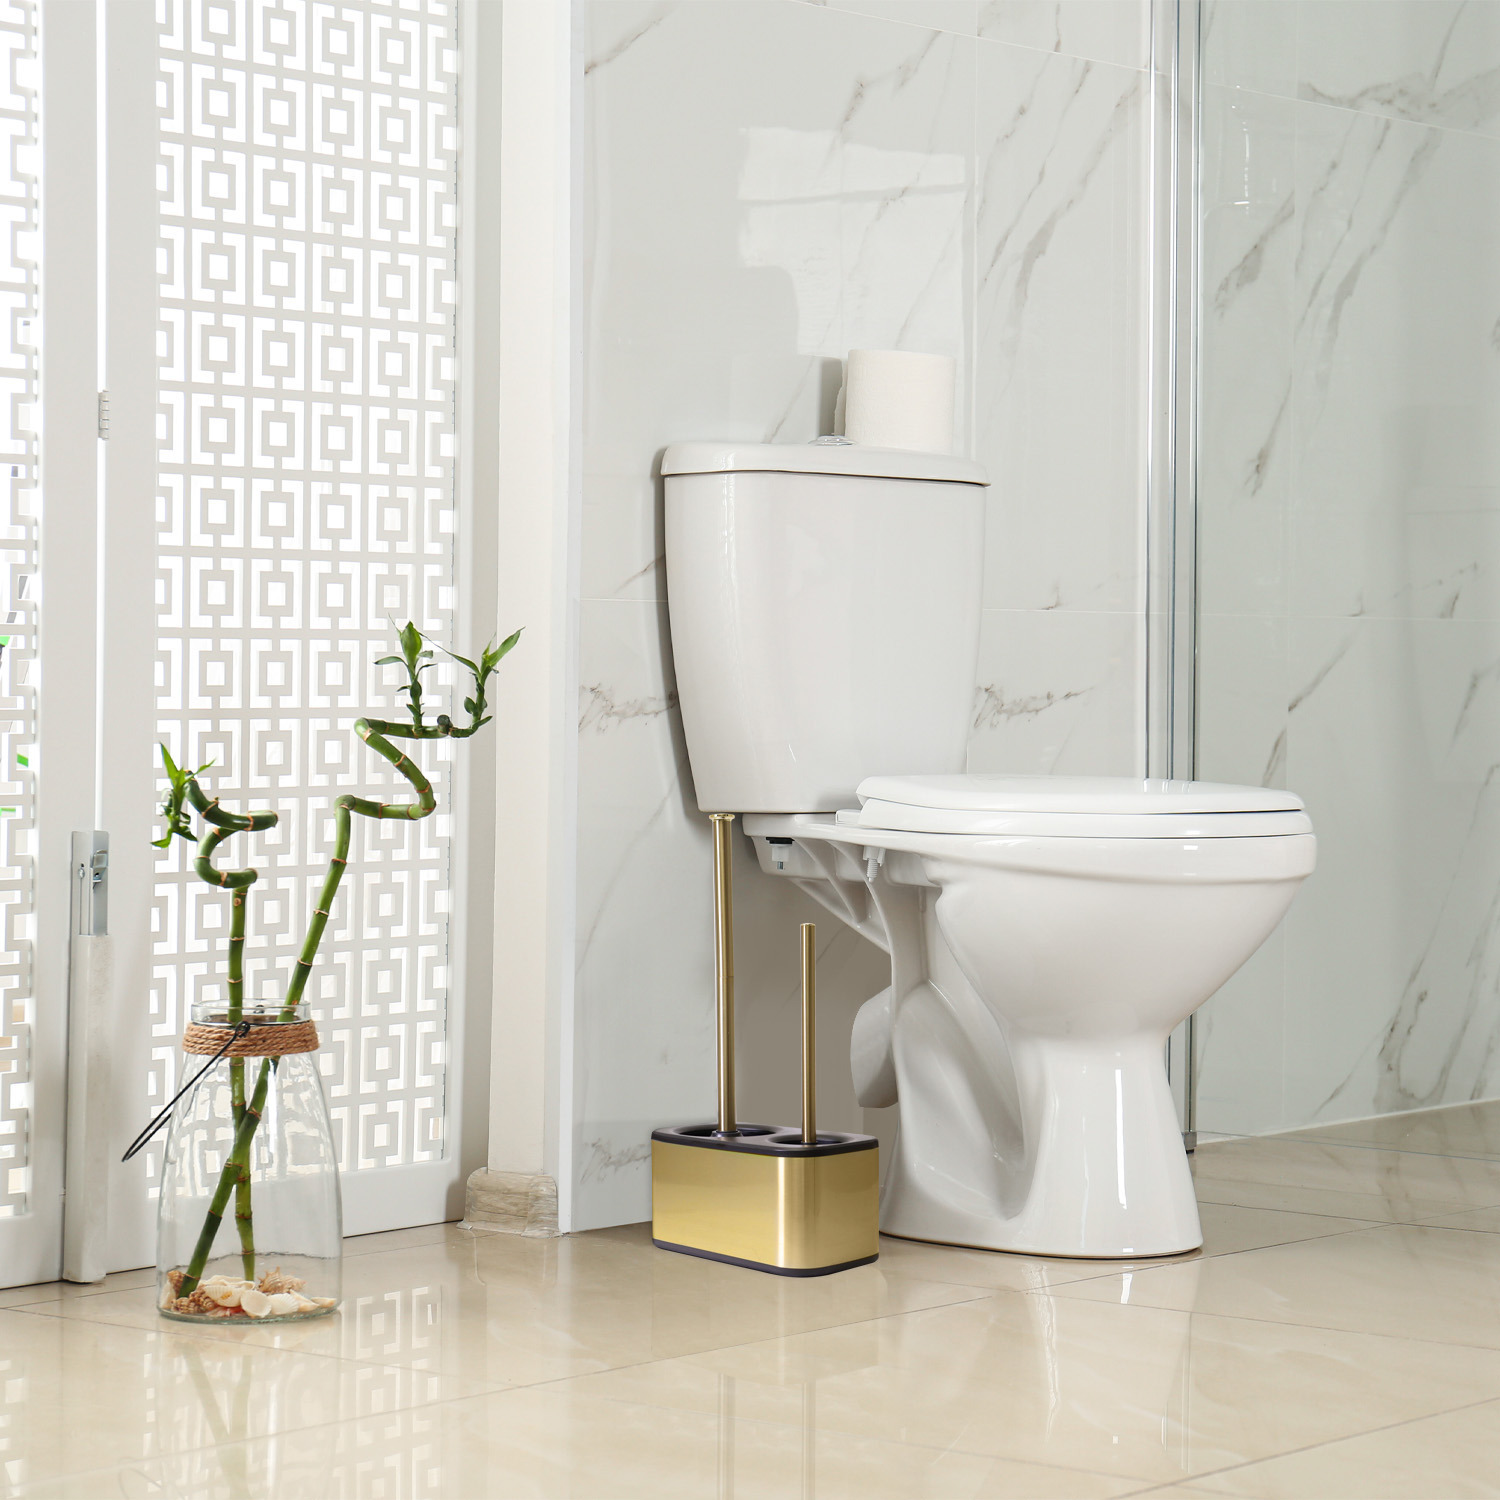 modern sleek toilet bowl brush and Toilet plunger combo - Gold